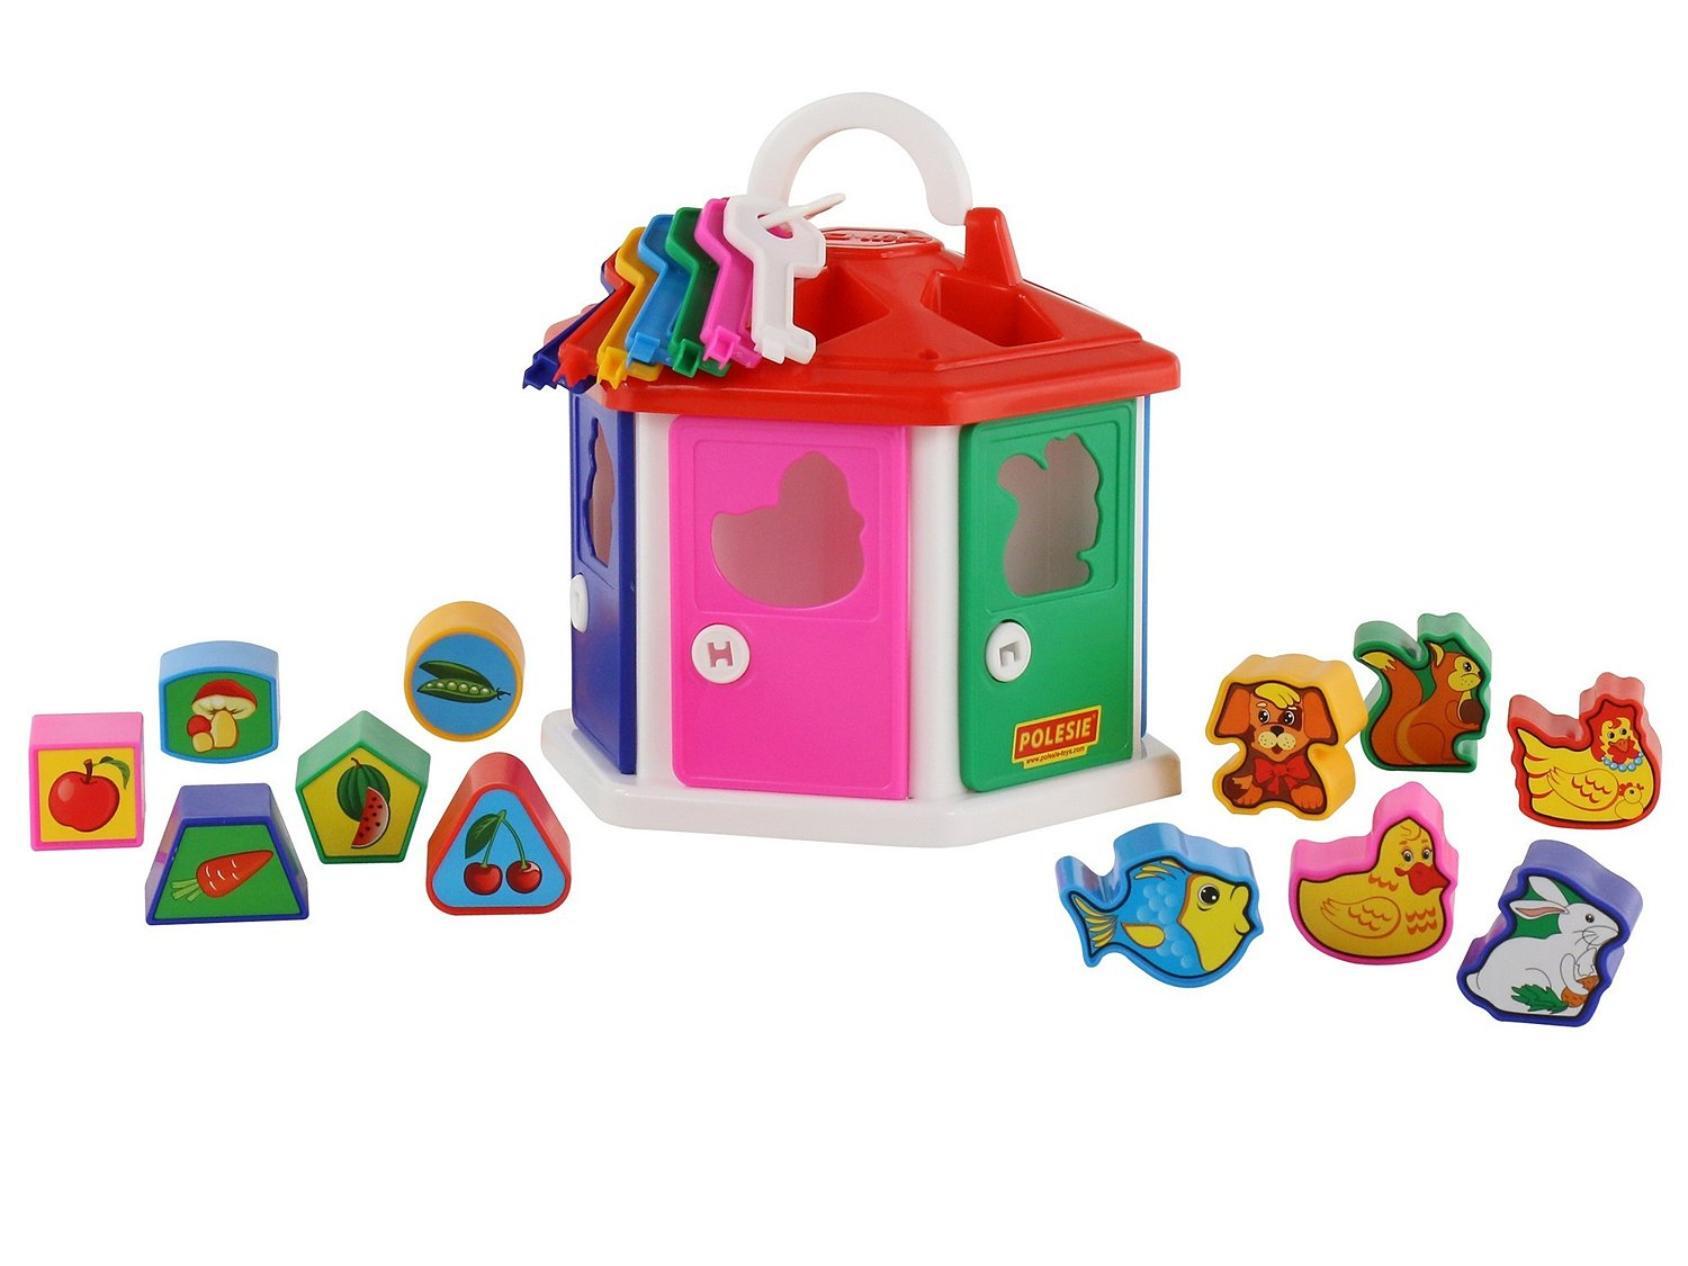 Развивающие игрушки для детей до 2 лет - купить в интернет-магазине Детмир в Минске